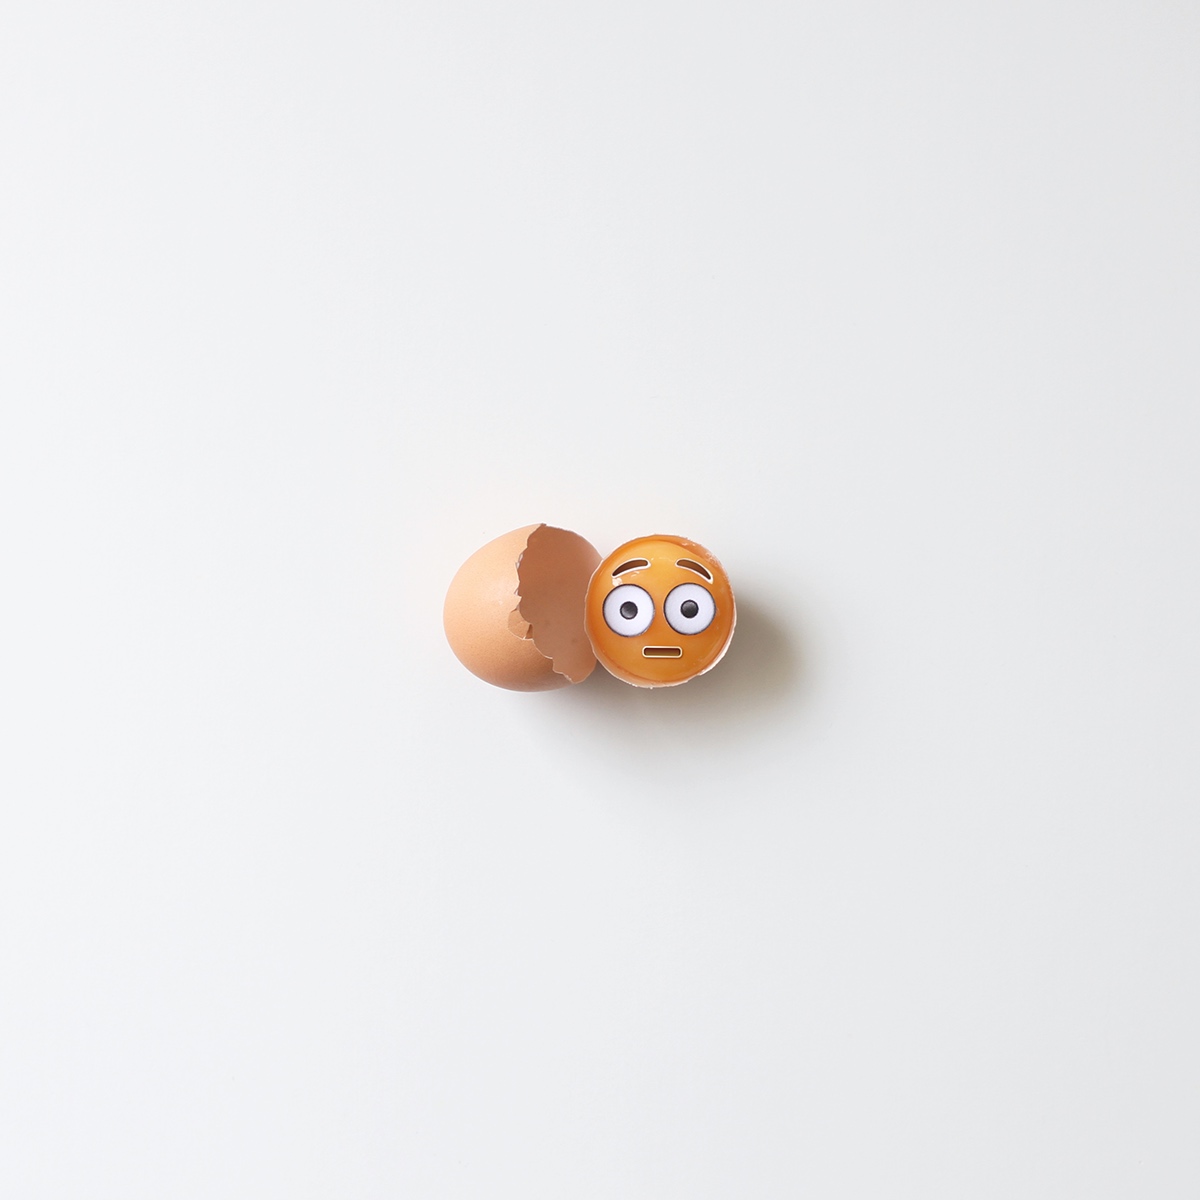 Emoji emojicon Icon illustratiion Food  minimalist object pchyburrs idea_in_picture still life concept